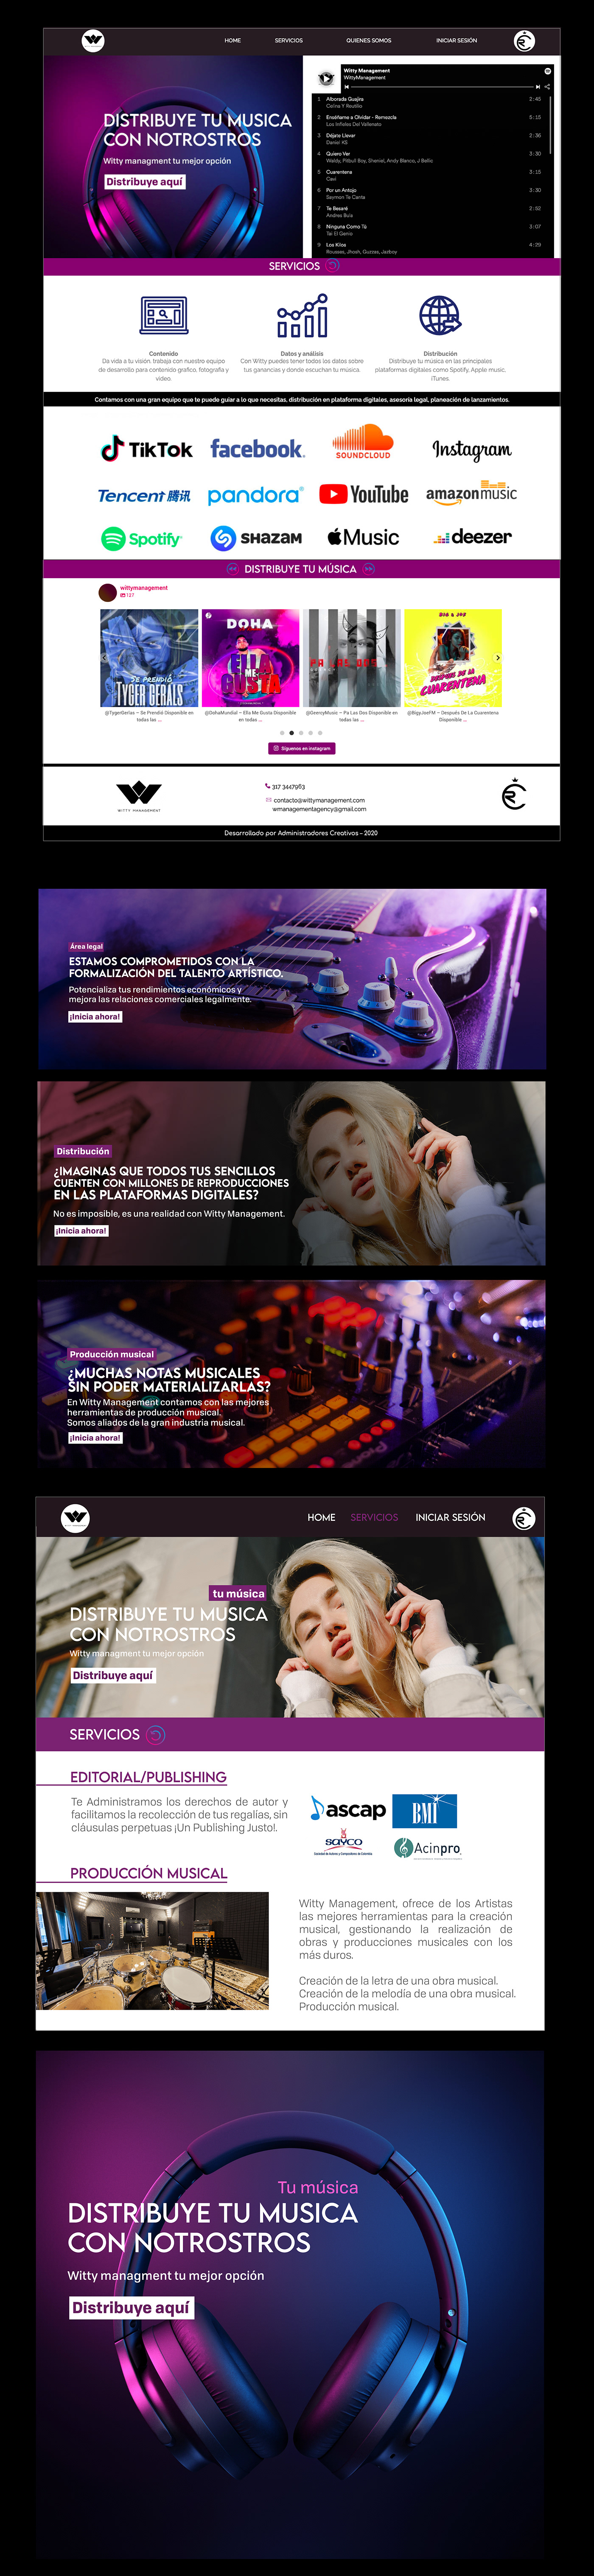 desarrollo web digital Diseño web elementor pro musica pagina web sitio web ux